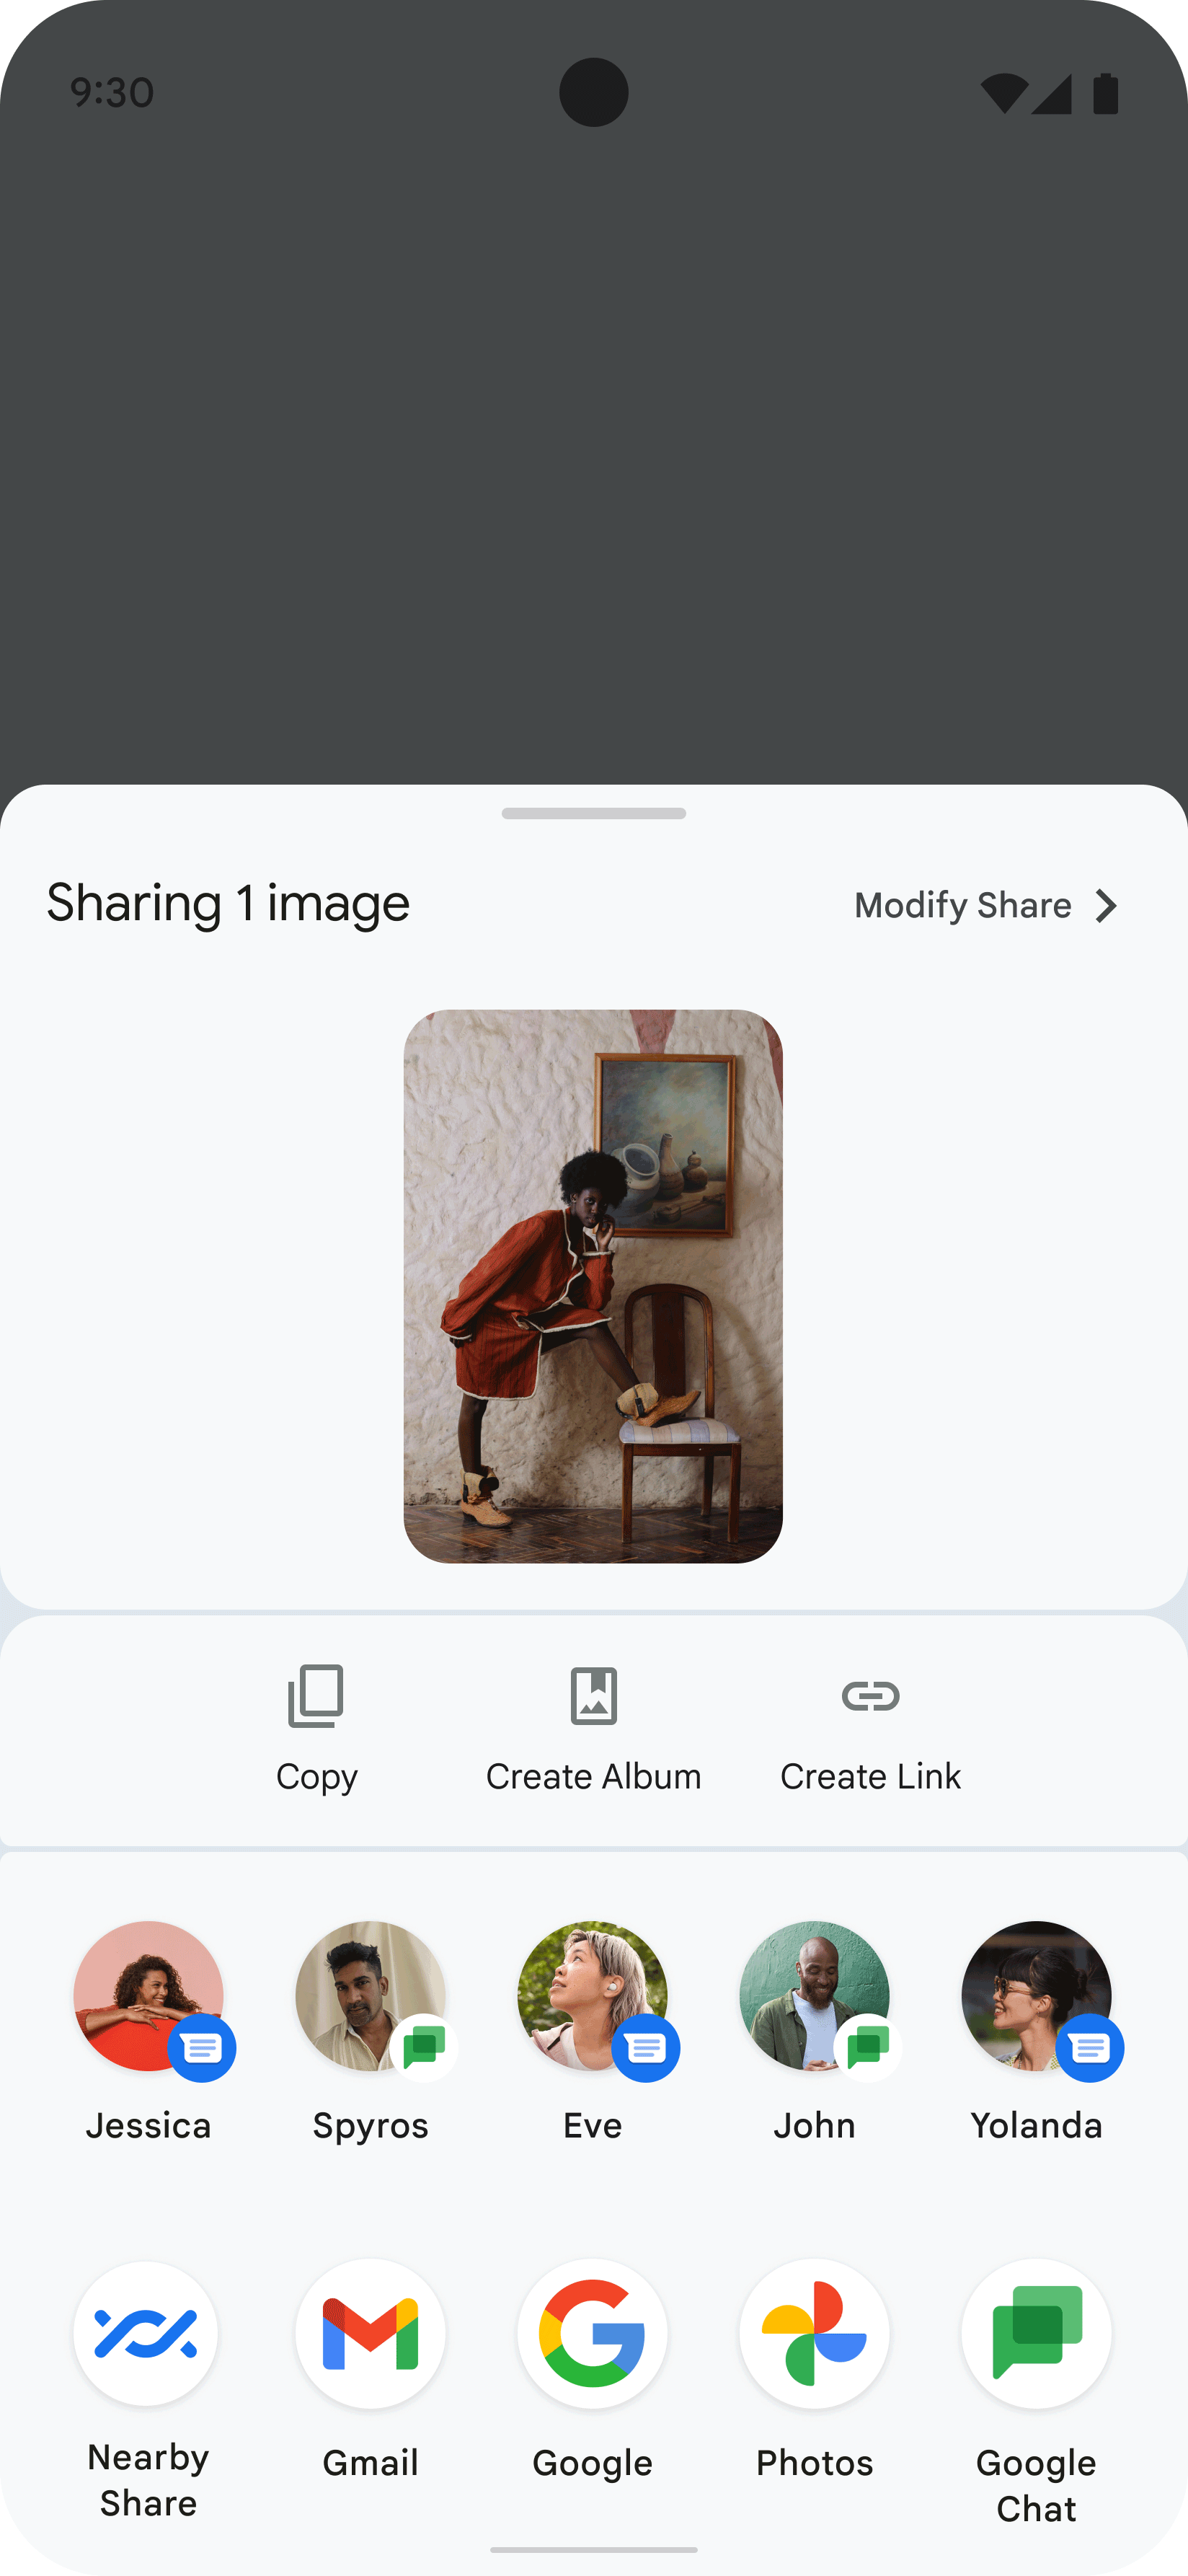 Cette image montre la Sharesheet affichée dans une application lorsque l'utilisateur partage une image d'une personne. La Sharesheet affiche plusieurs icônes représentant les contacts et les applications avec lesquels le partage de l'image est possible.